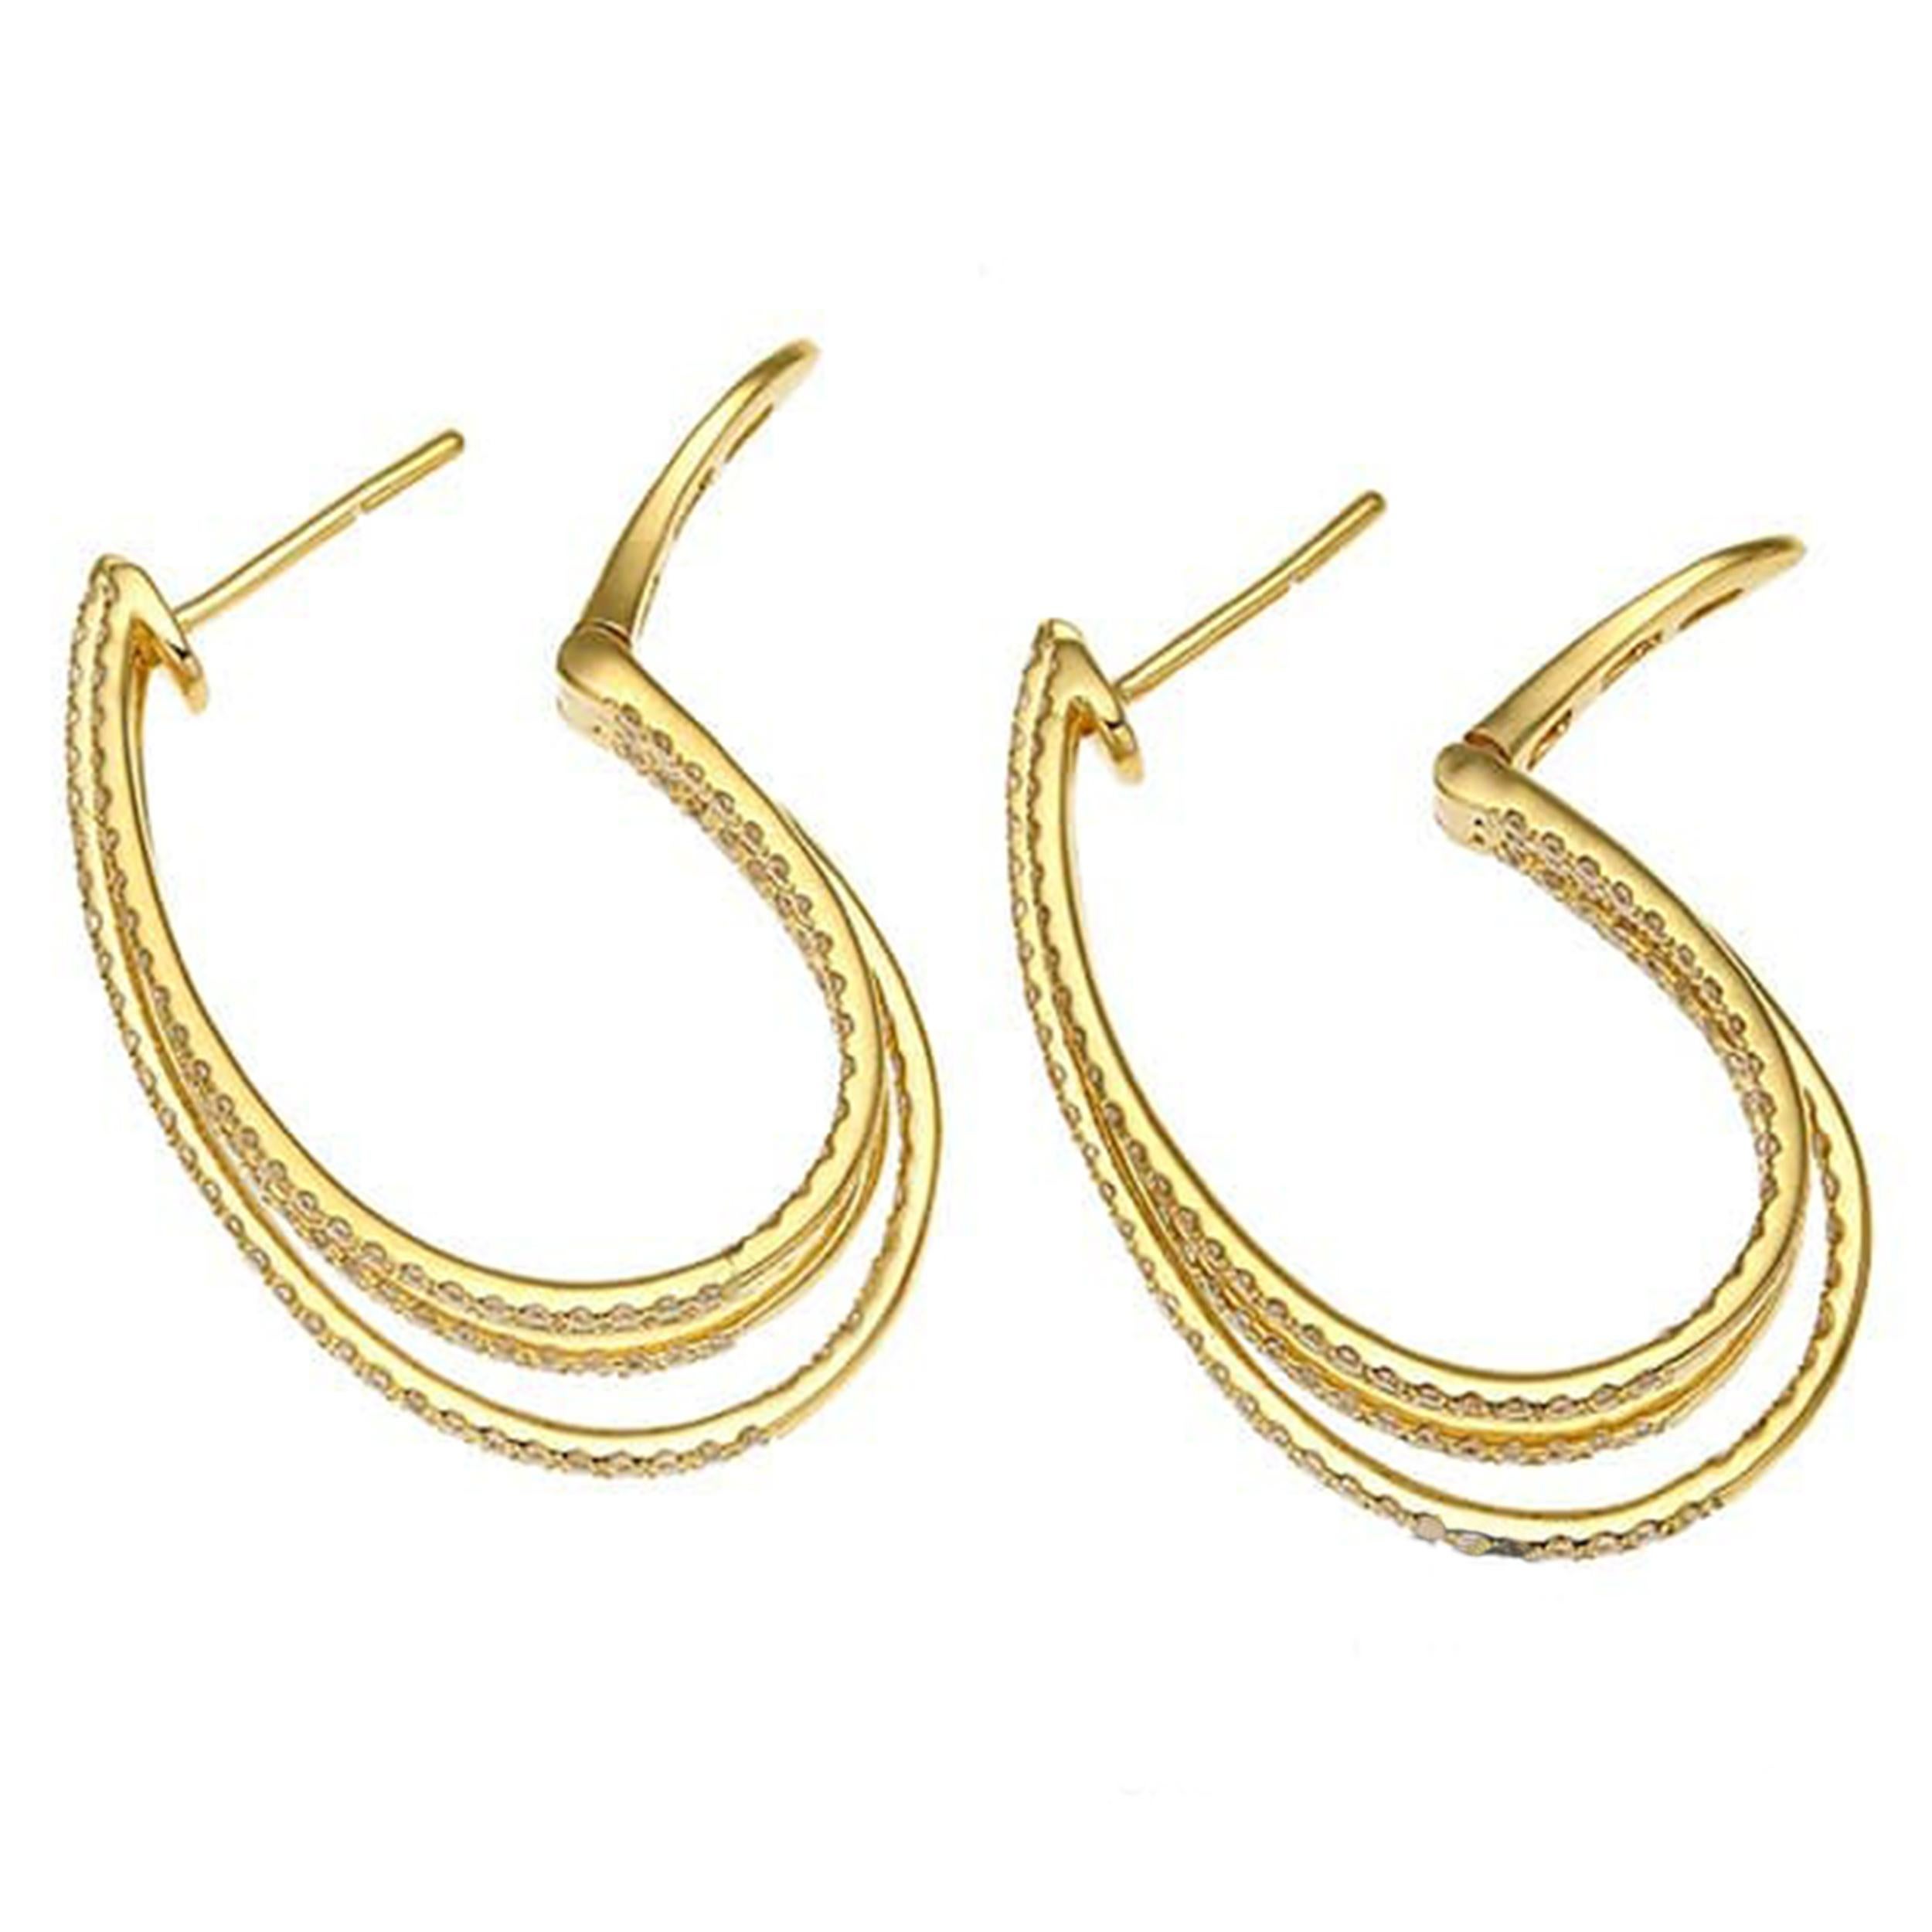 Élevez votre style avec ces boucles d'oreilles exquises en or jaune 18 carats et diamants. Chaque boucle d'oreille est ornée de deux diamants éblouissants, d'une valeur totale d'environ 0,53 carat chacun, sertis dans un design classique et élégant.